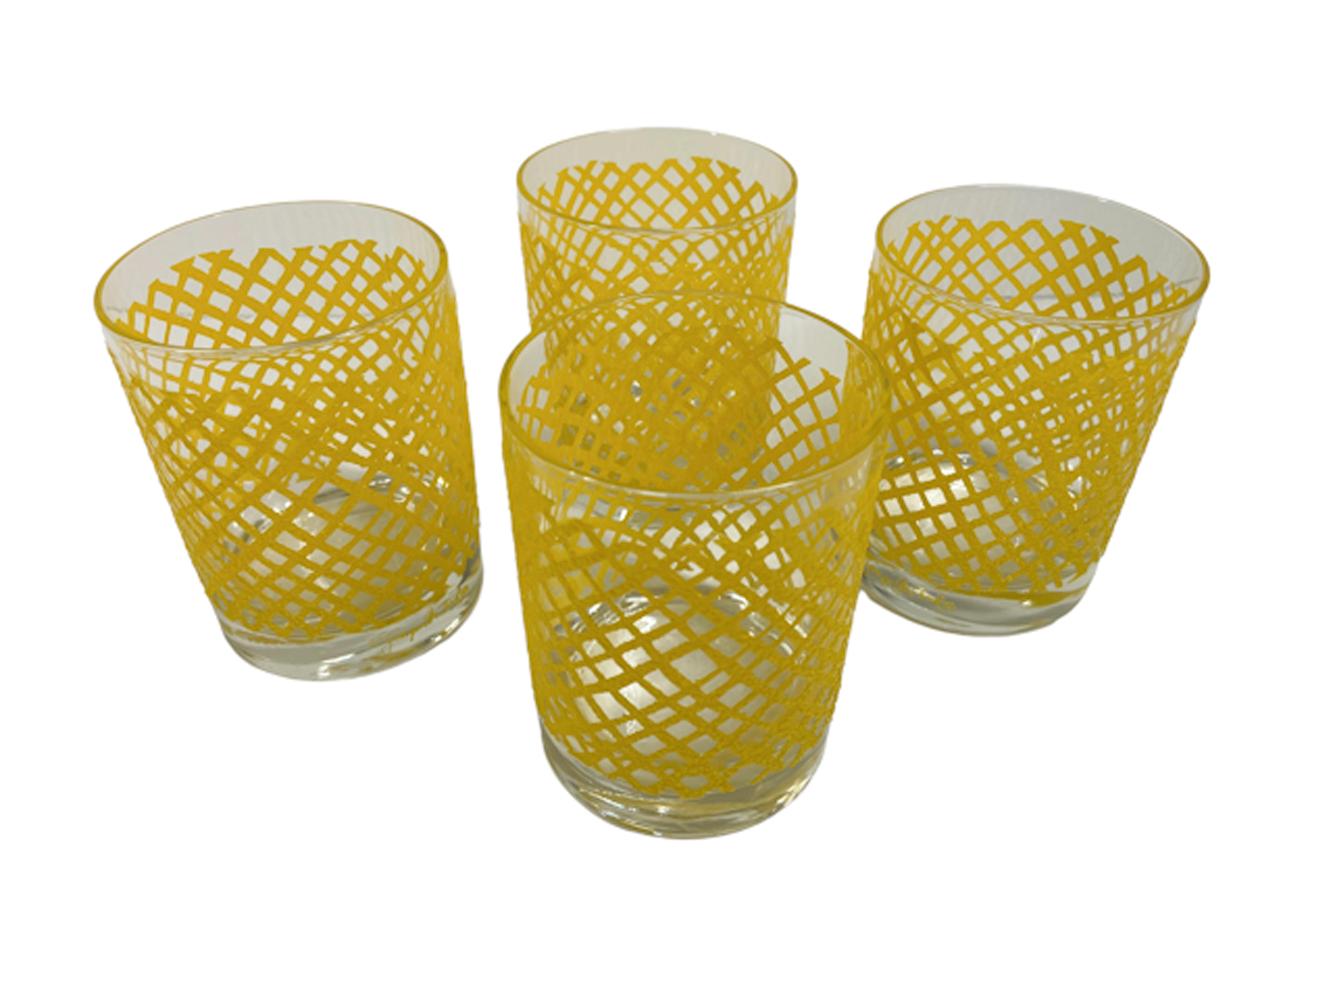 Quatre verres à pied Georges Briard avec un motif de filet jaune irrégulier en relief et texturé avec une surface antidérapante.